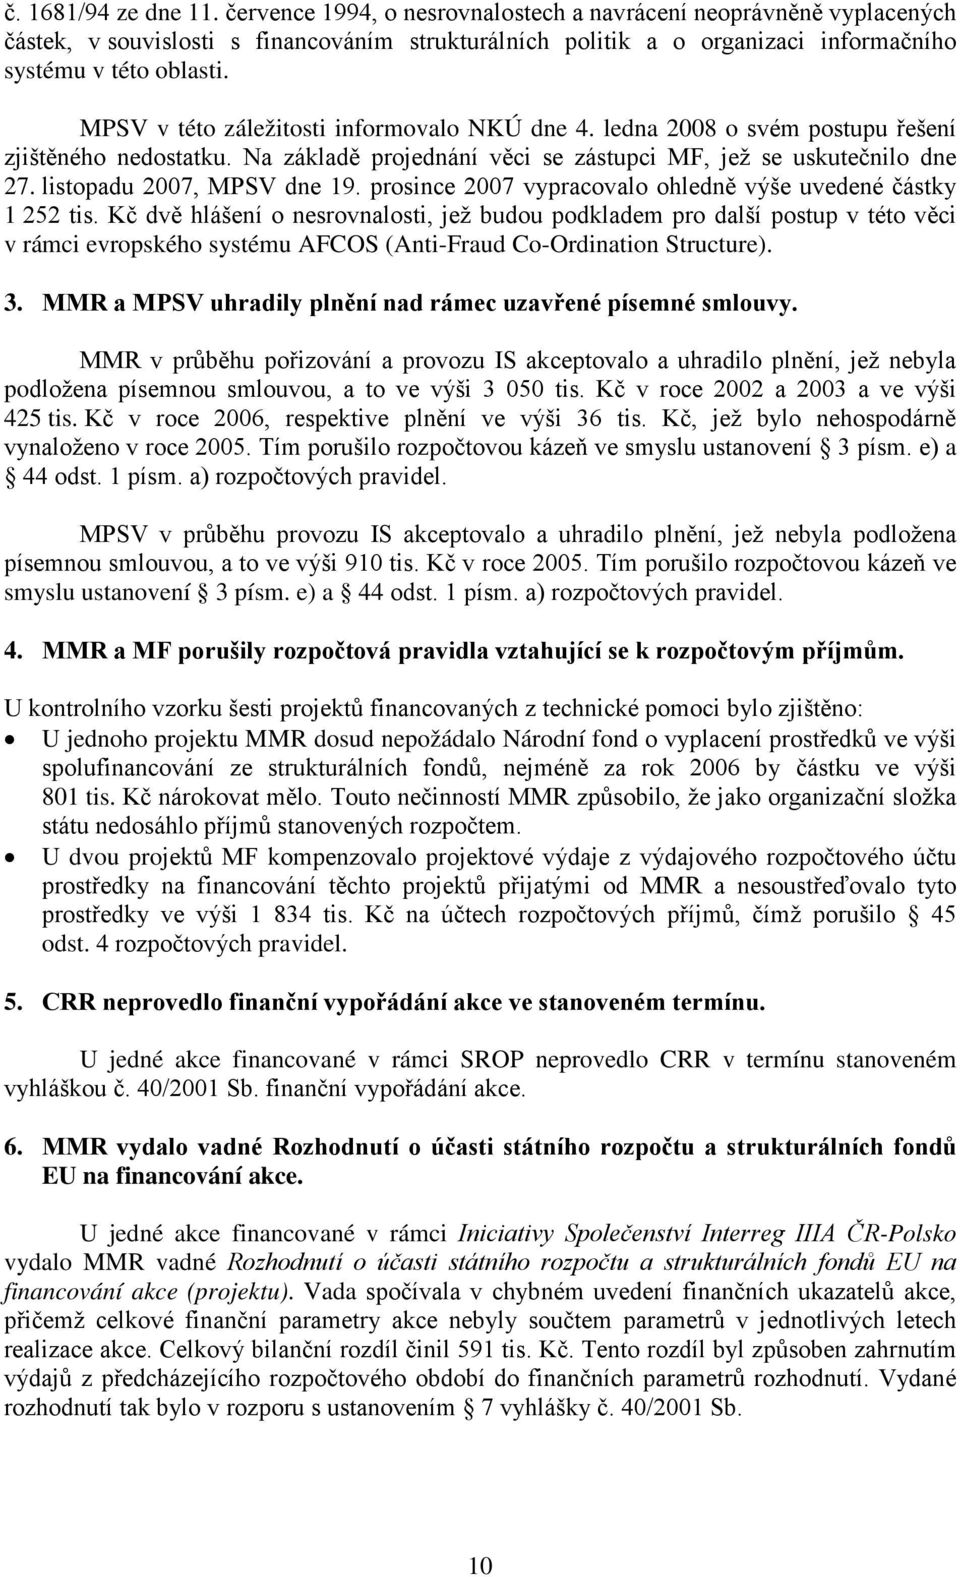 MPSV v této záležitosti informovalo NKÚ dne 4. ledna 2008 o svém postupu řešení zjištěného nedostatku. Na základě projednání věci se zástupci MF, jež se uskutečnilo dne 27.